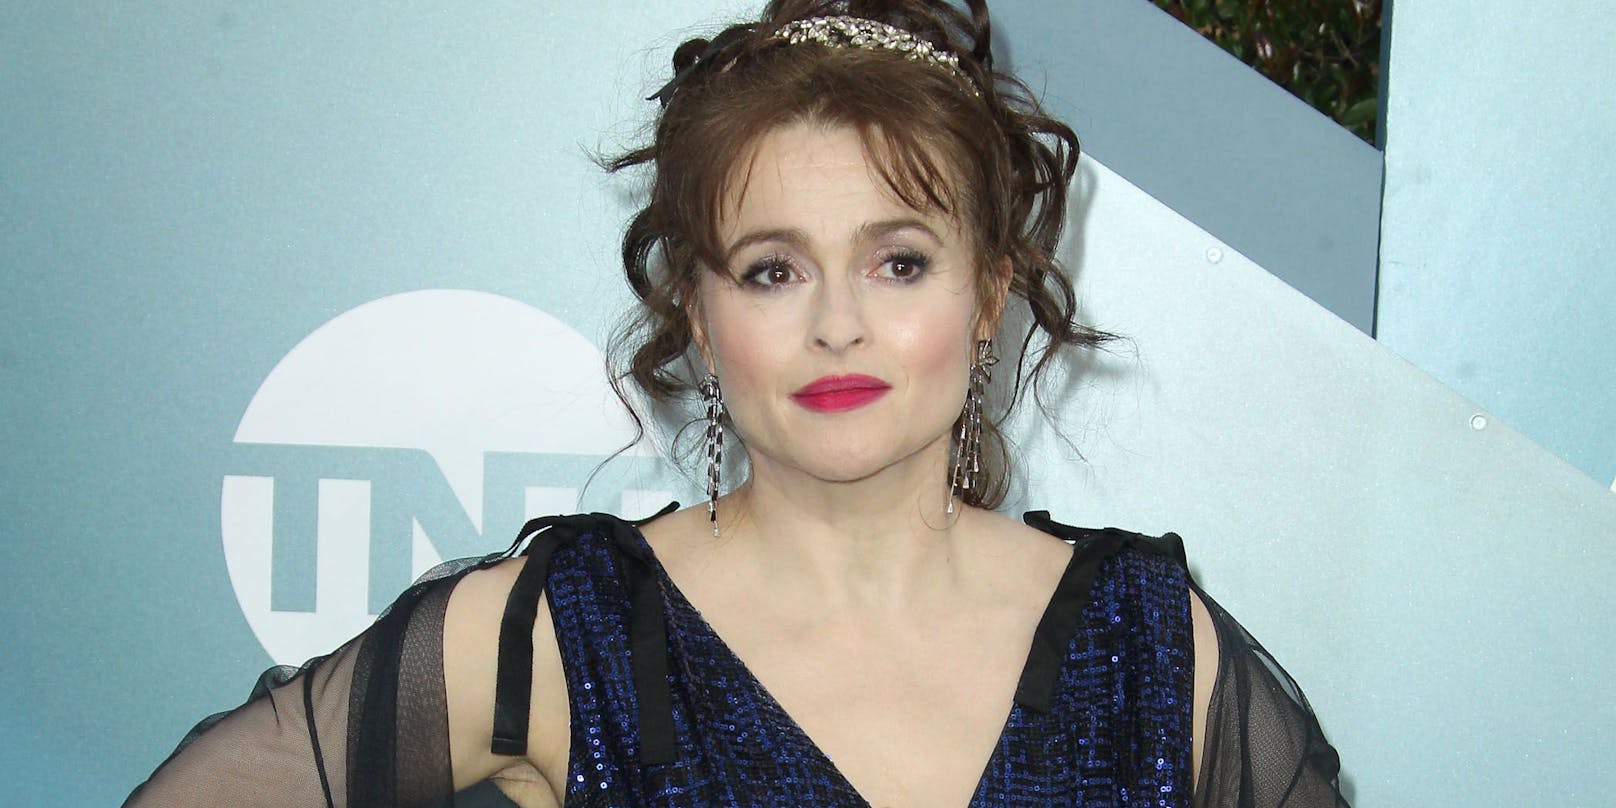 Helena Bonham Carter war unter anderem in "The Crown, "Harry Potter"-Filmen sowie in mehreren Filmen von Tim Burton zu sehen.